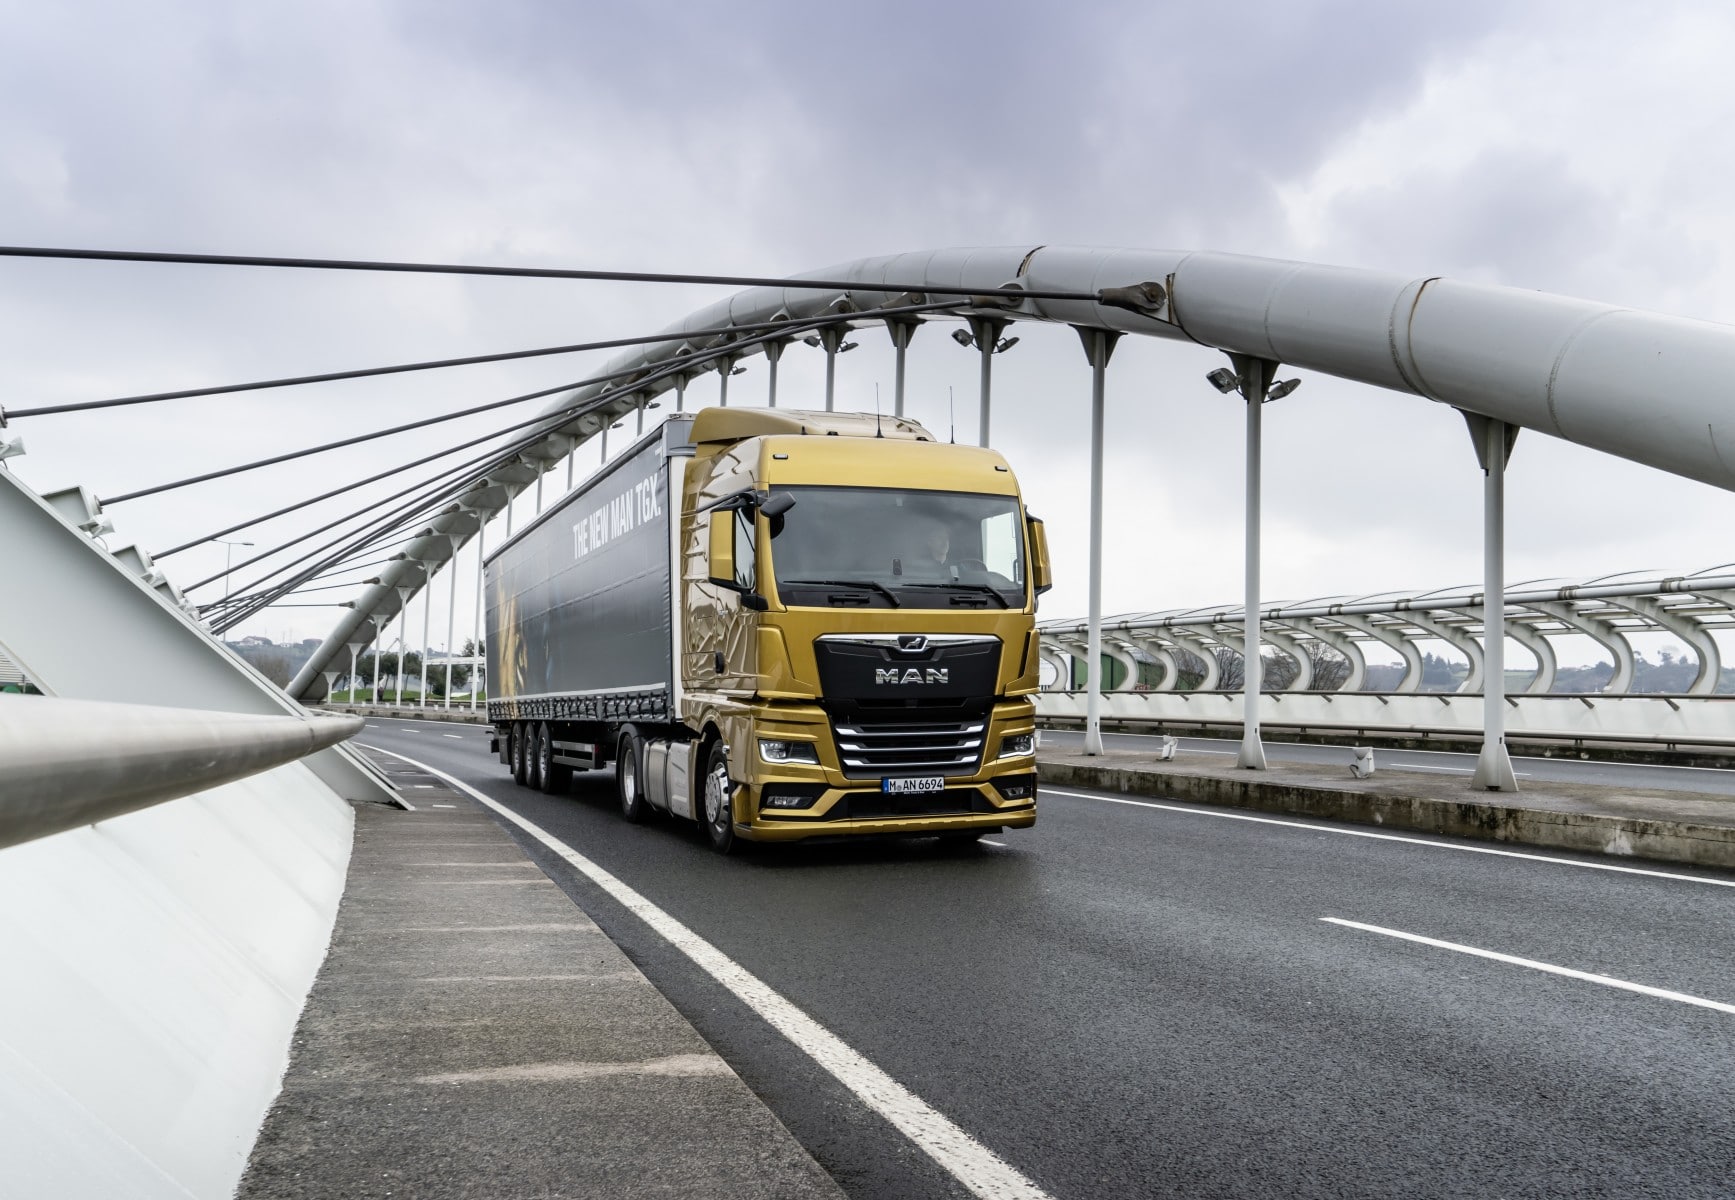 Efficacité confirmée lors du test TÜV : la nouvelle génération de camions MAN consomme jusqu’à 8,2 % moins de carburant